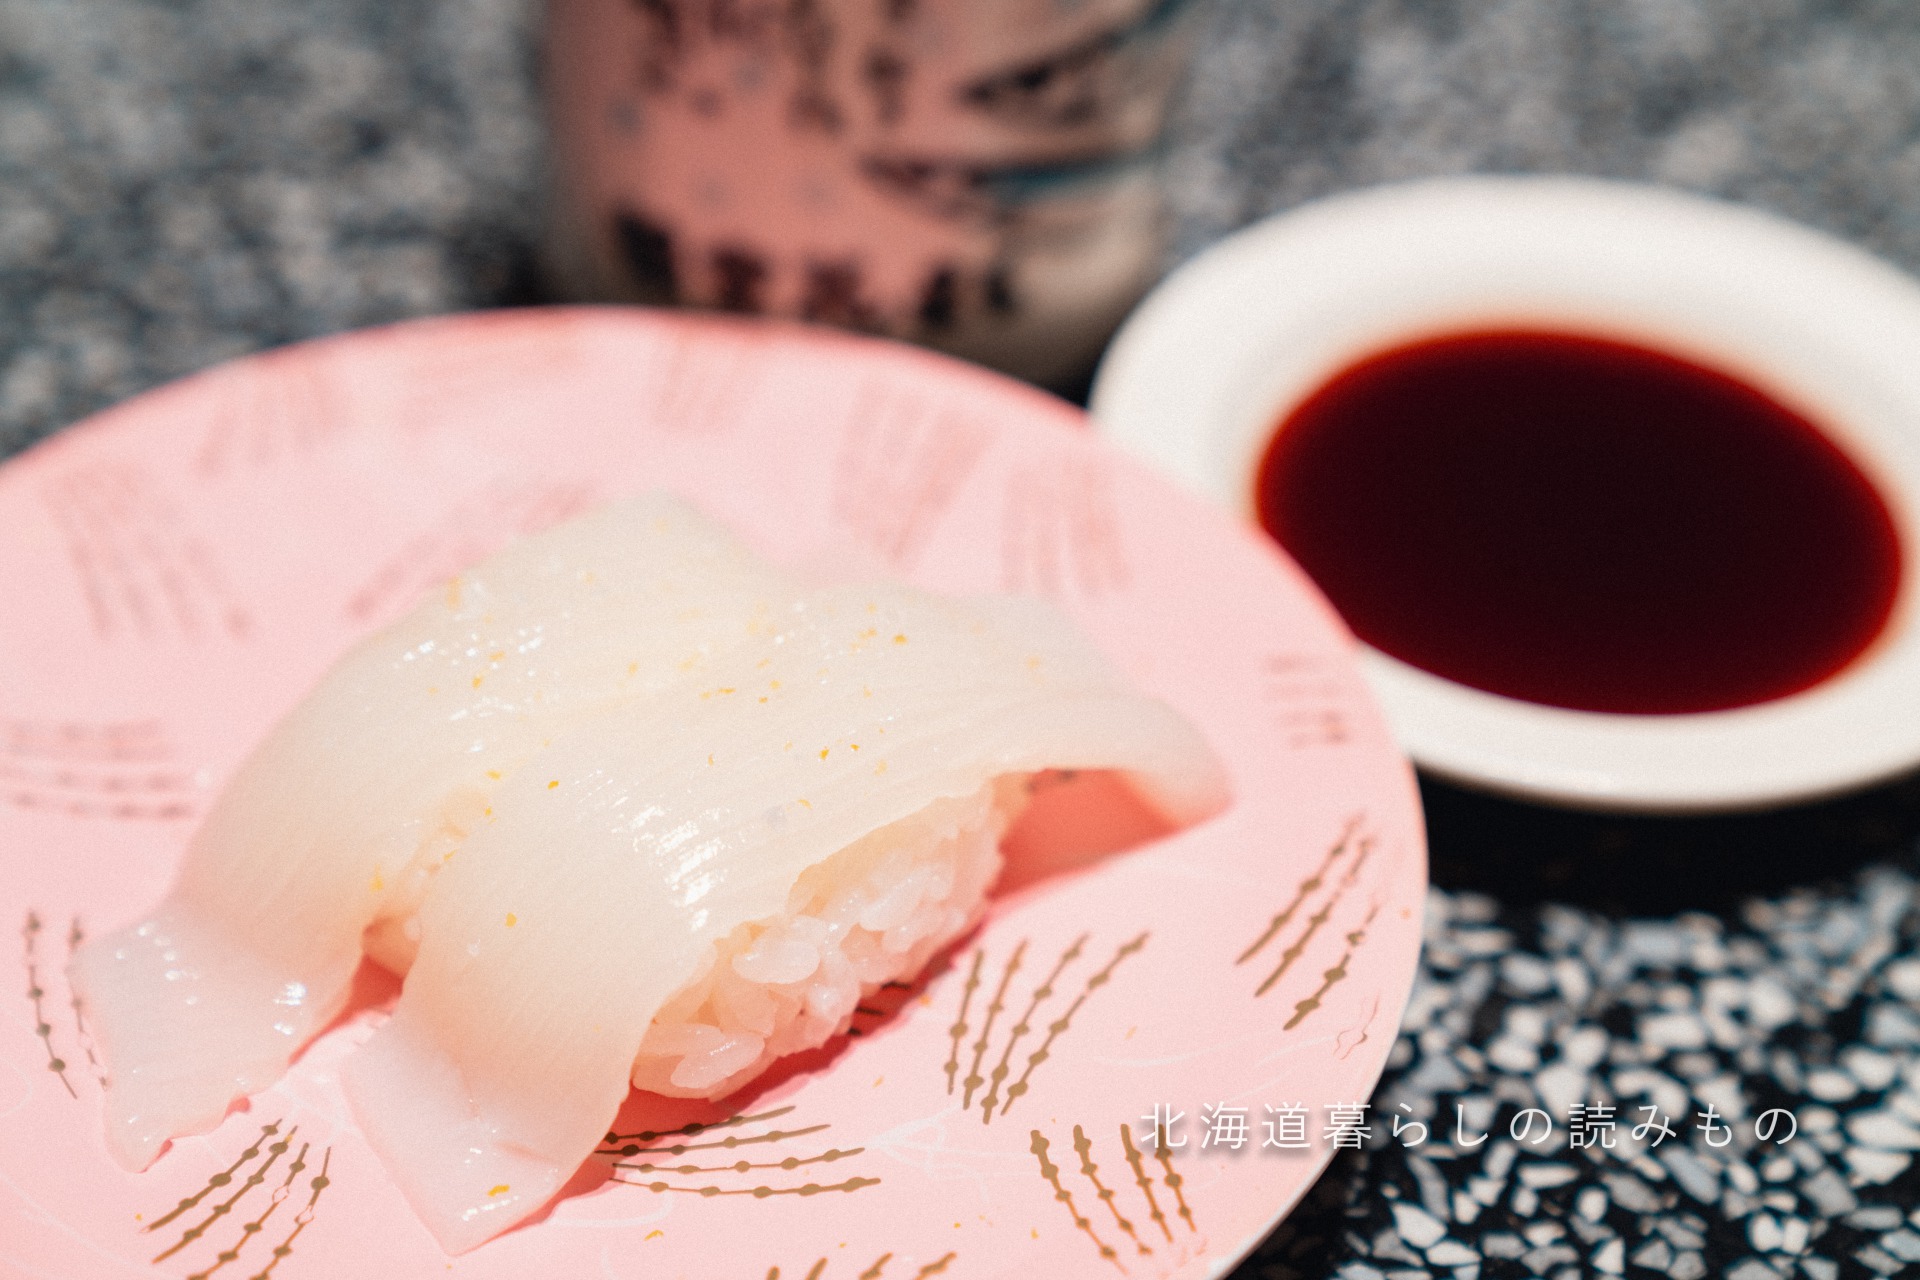 回転寿司 根室花まるのメニュー「真いかゆず塩握り」の写真